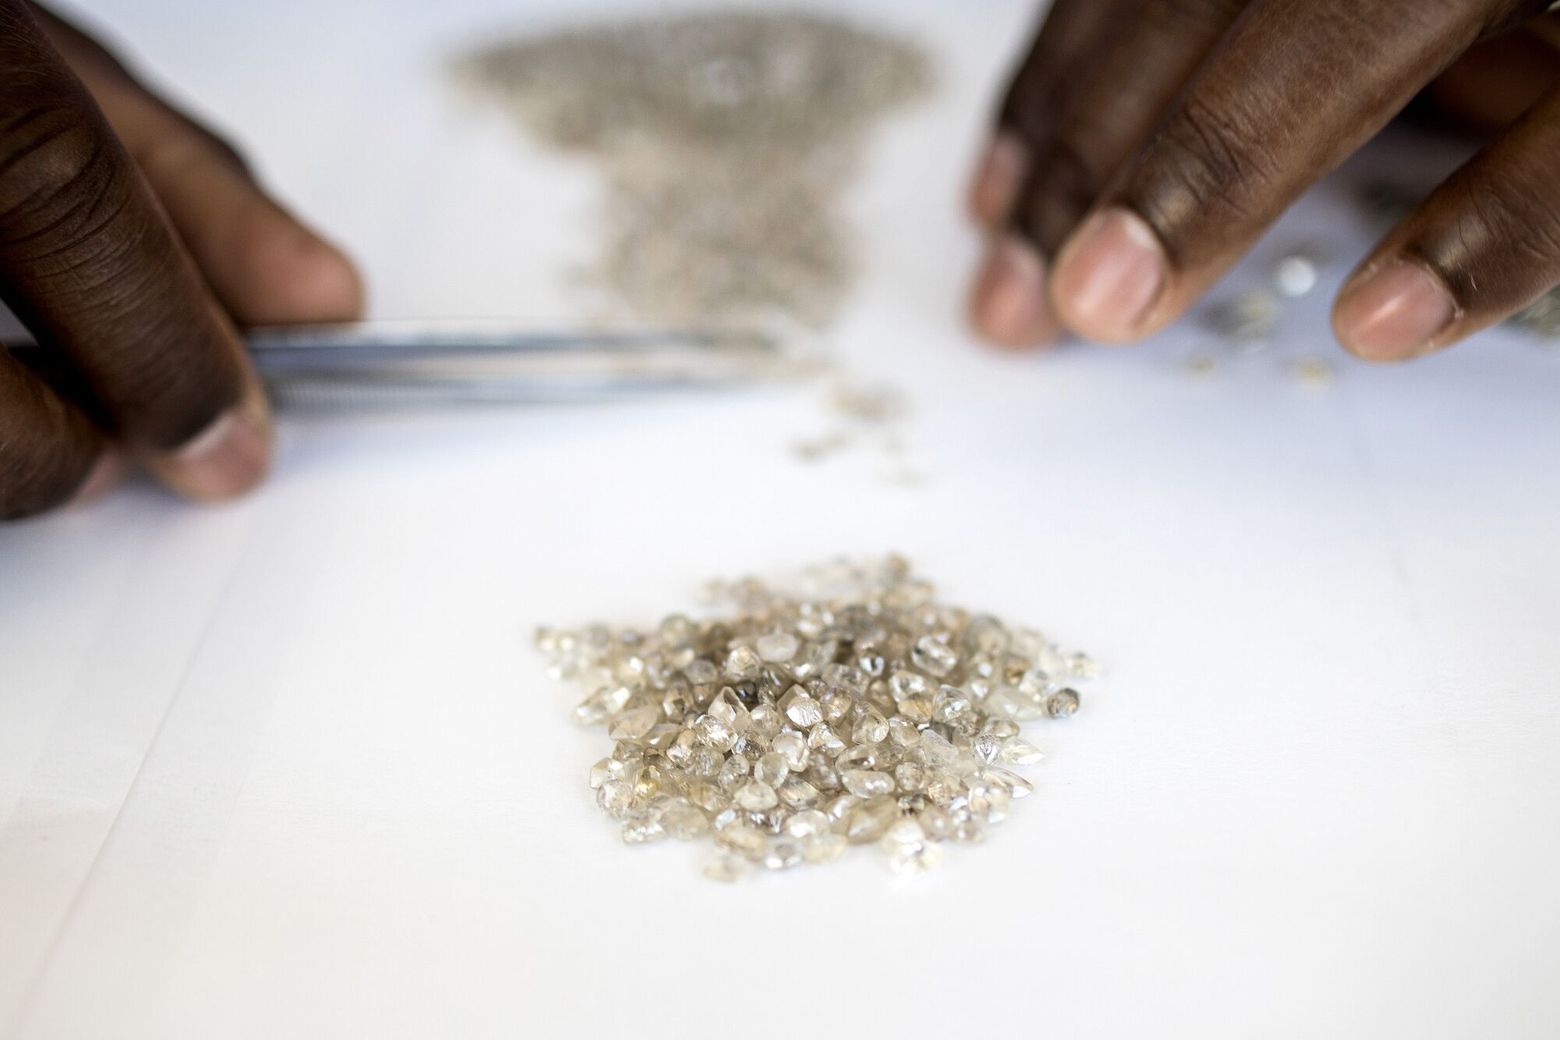 Lab-grown diamonds: precious stones or cut-price sparklers